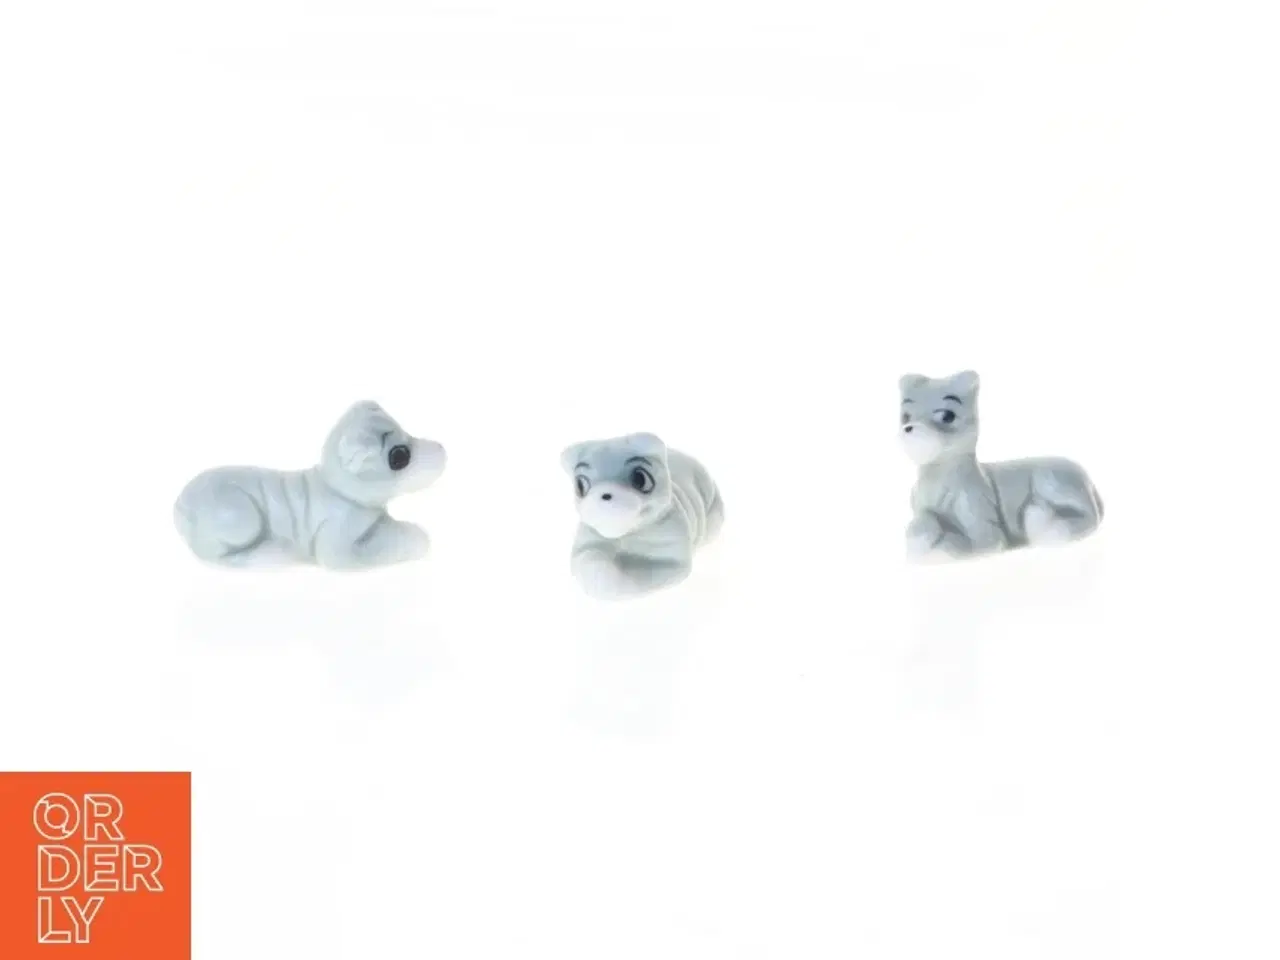 Billede 1 - Porcelænsfigurer af dyr (str. 3 x 1 cm)